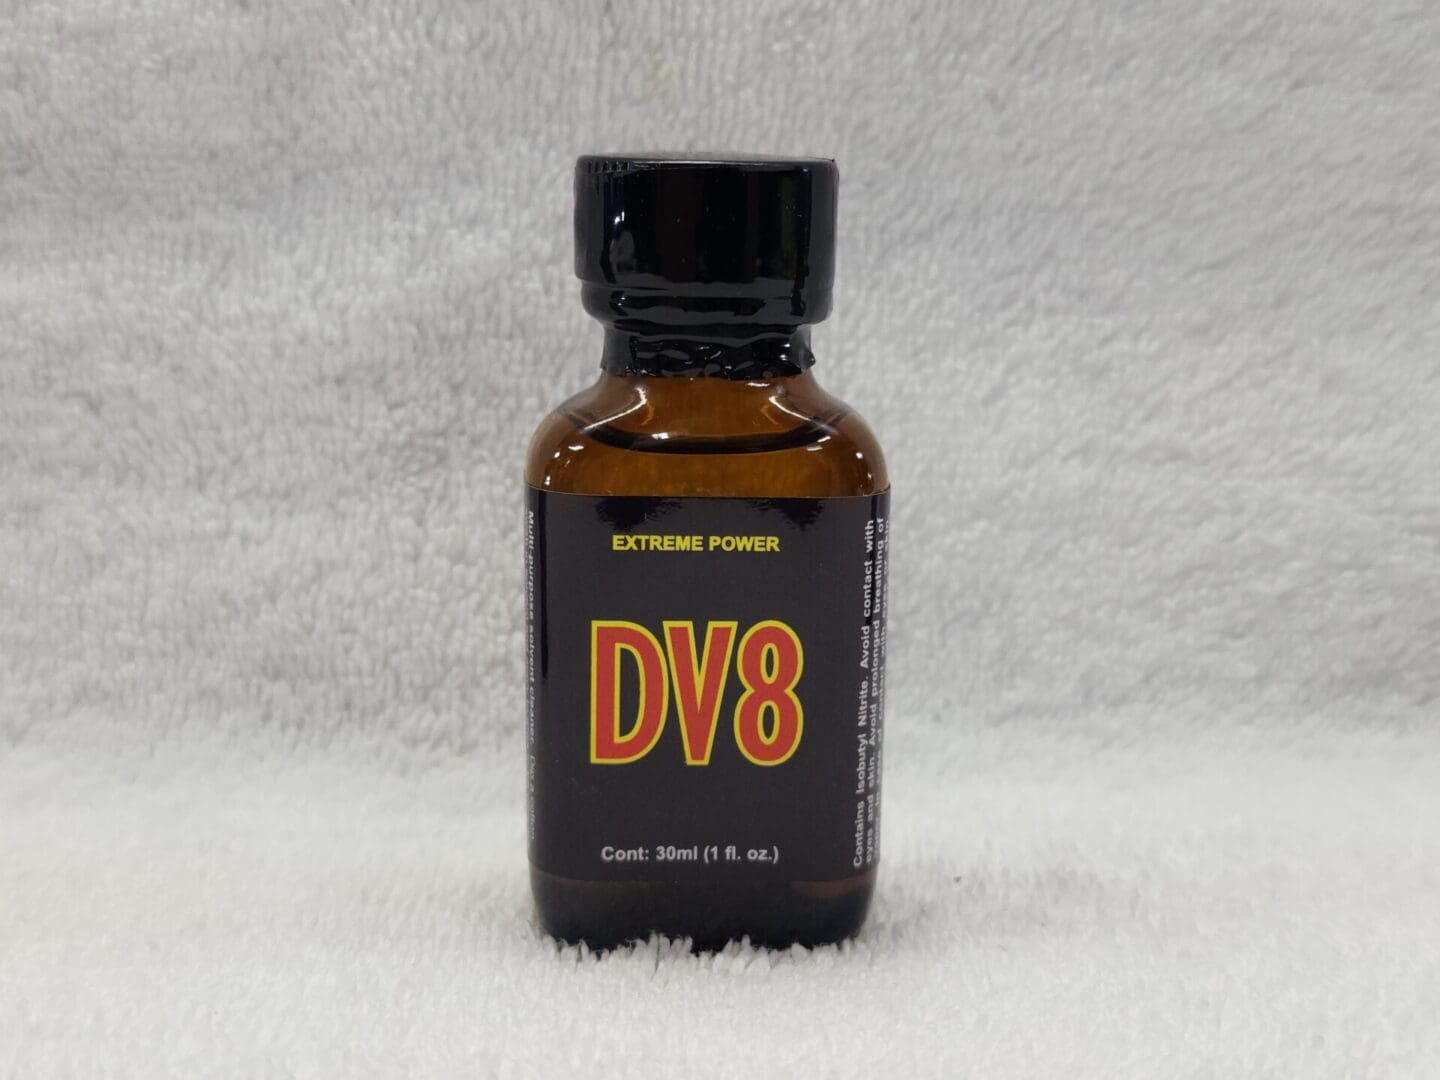 A bottle of dv 8